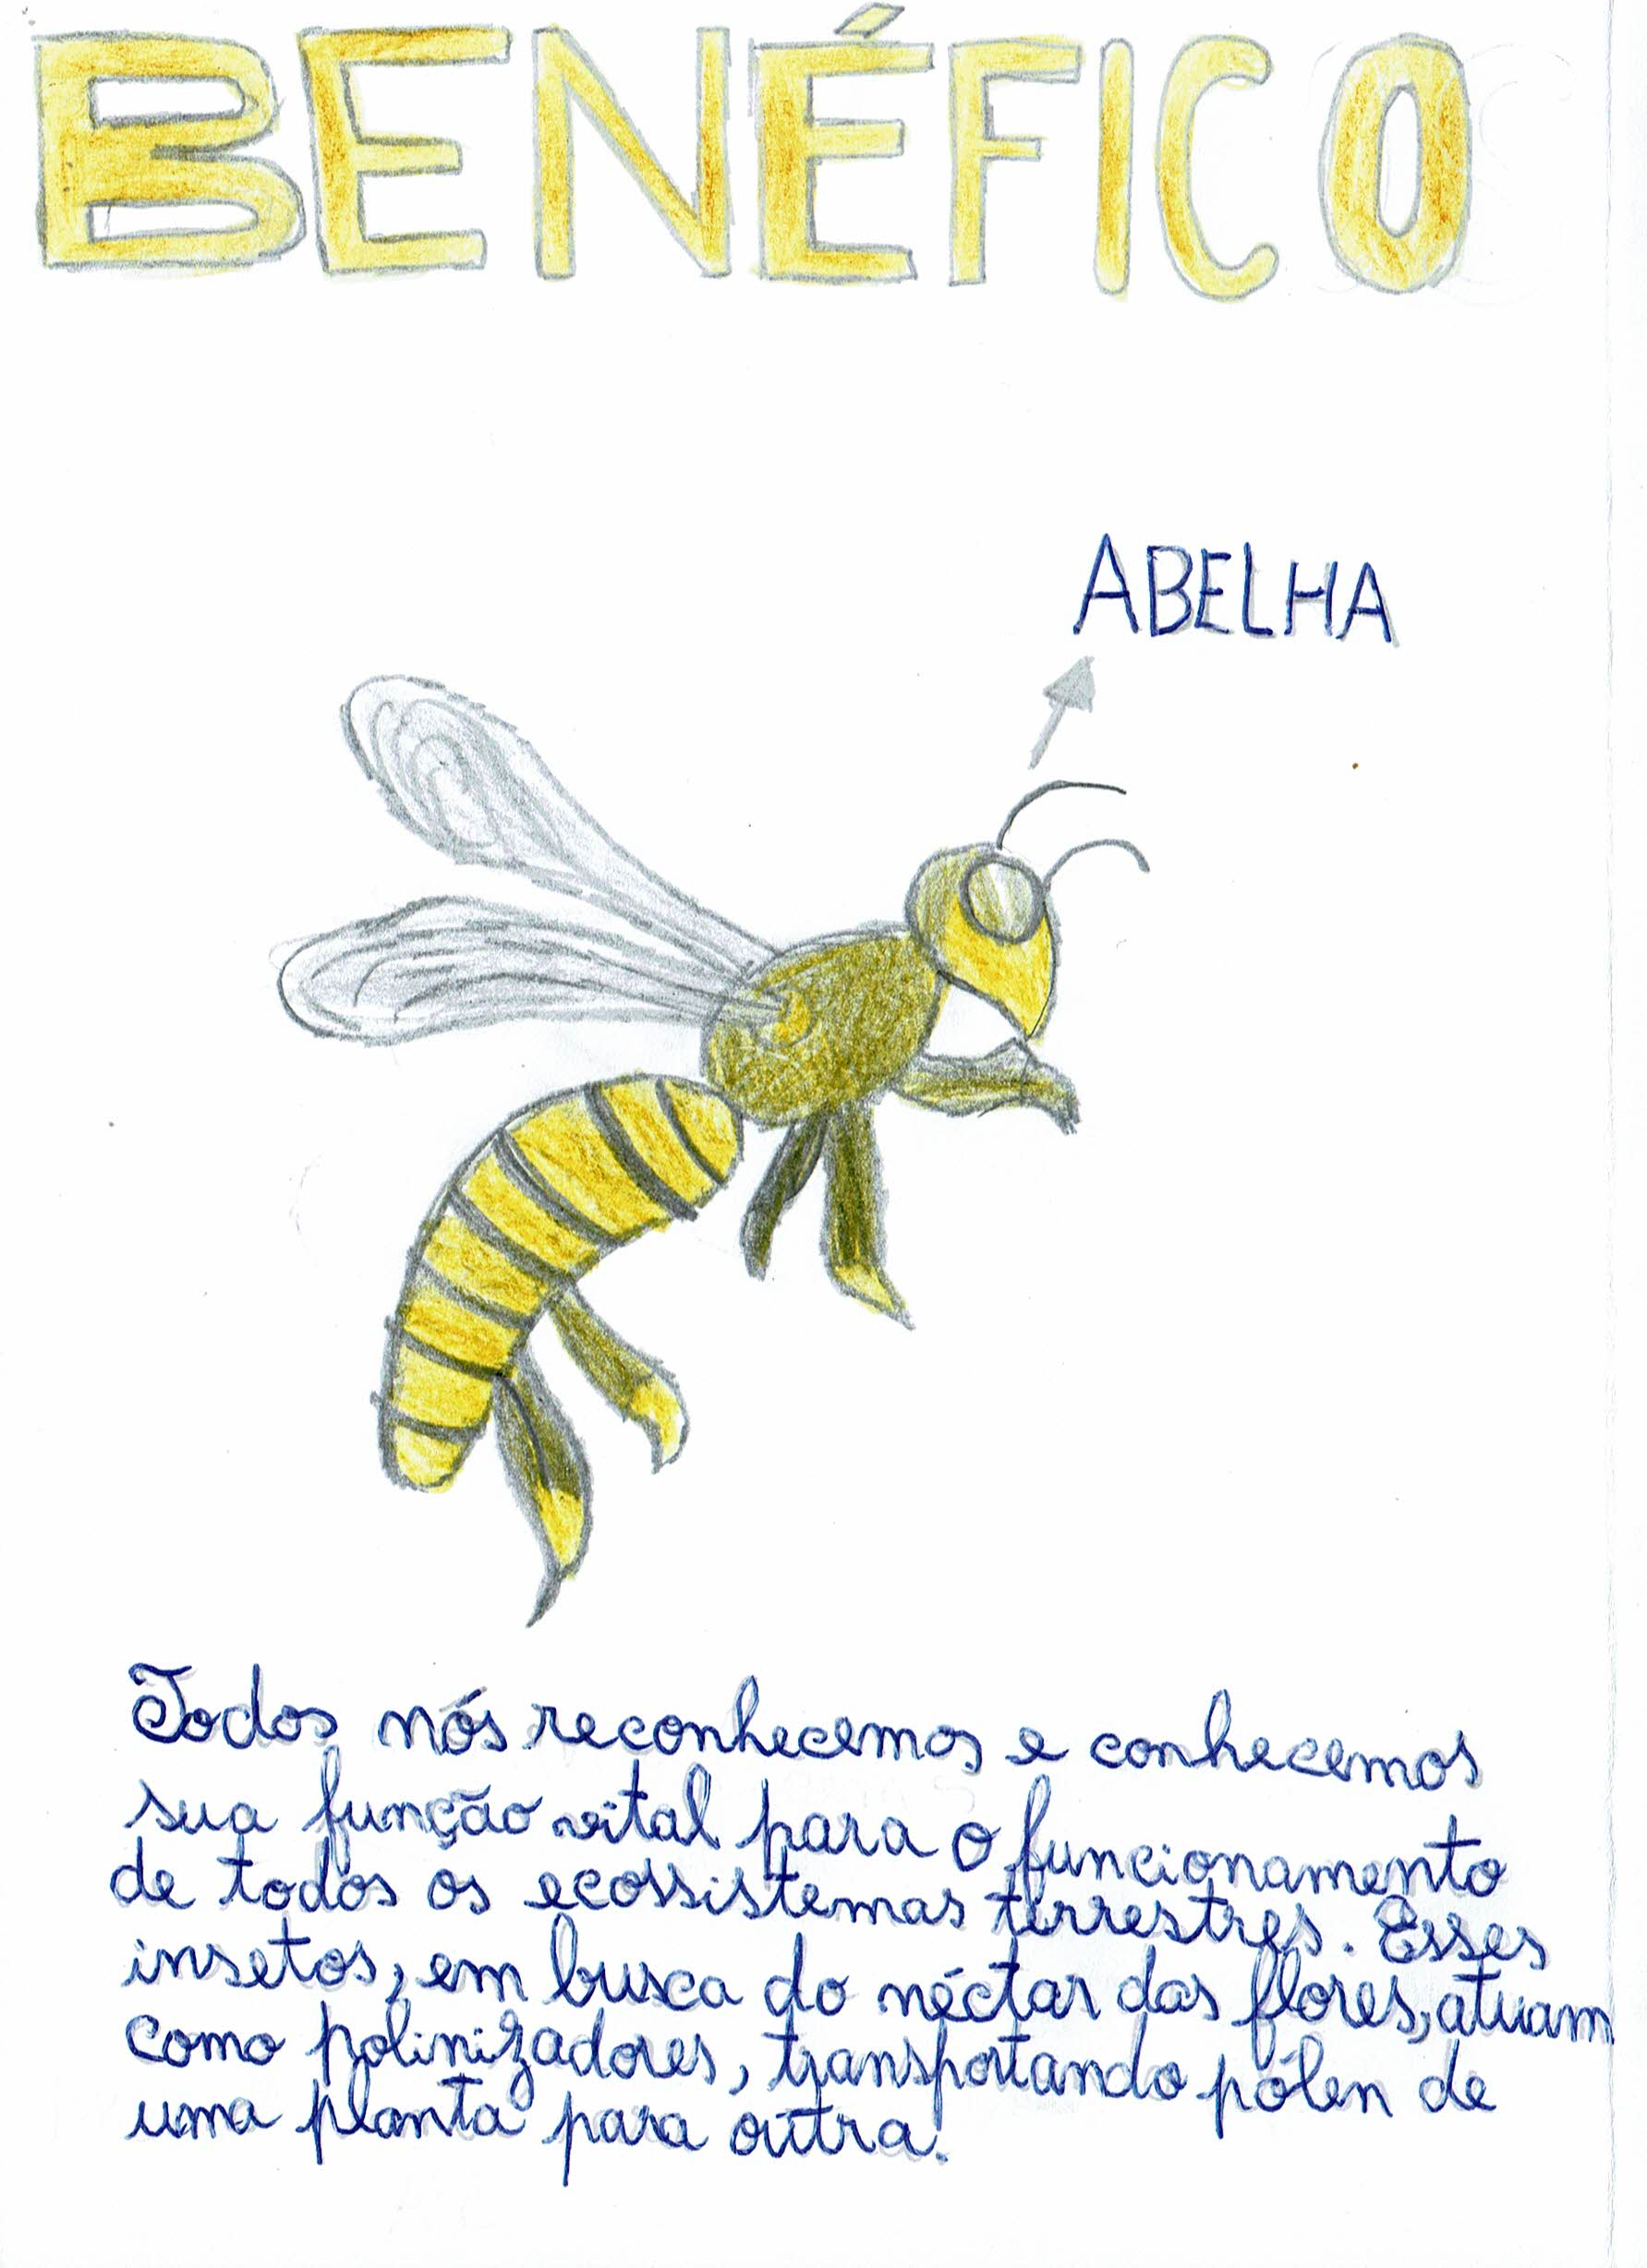 A abelha